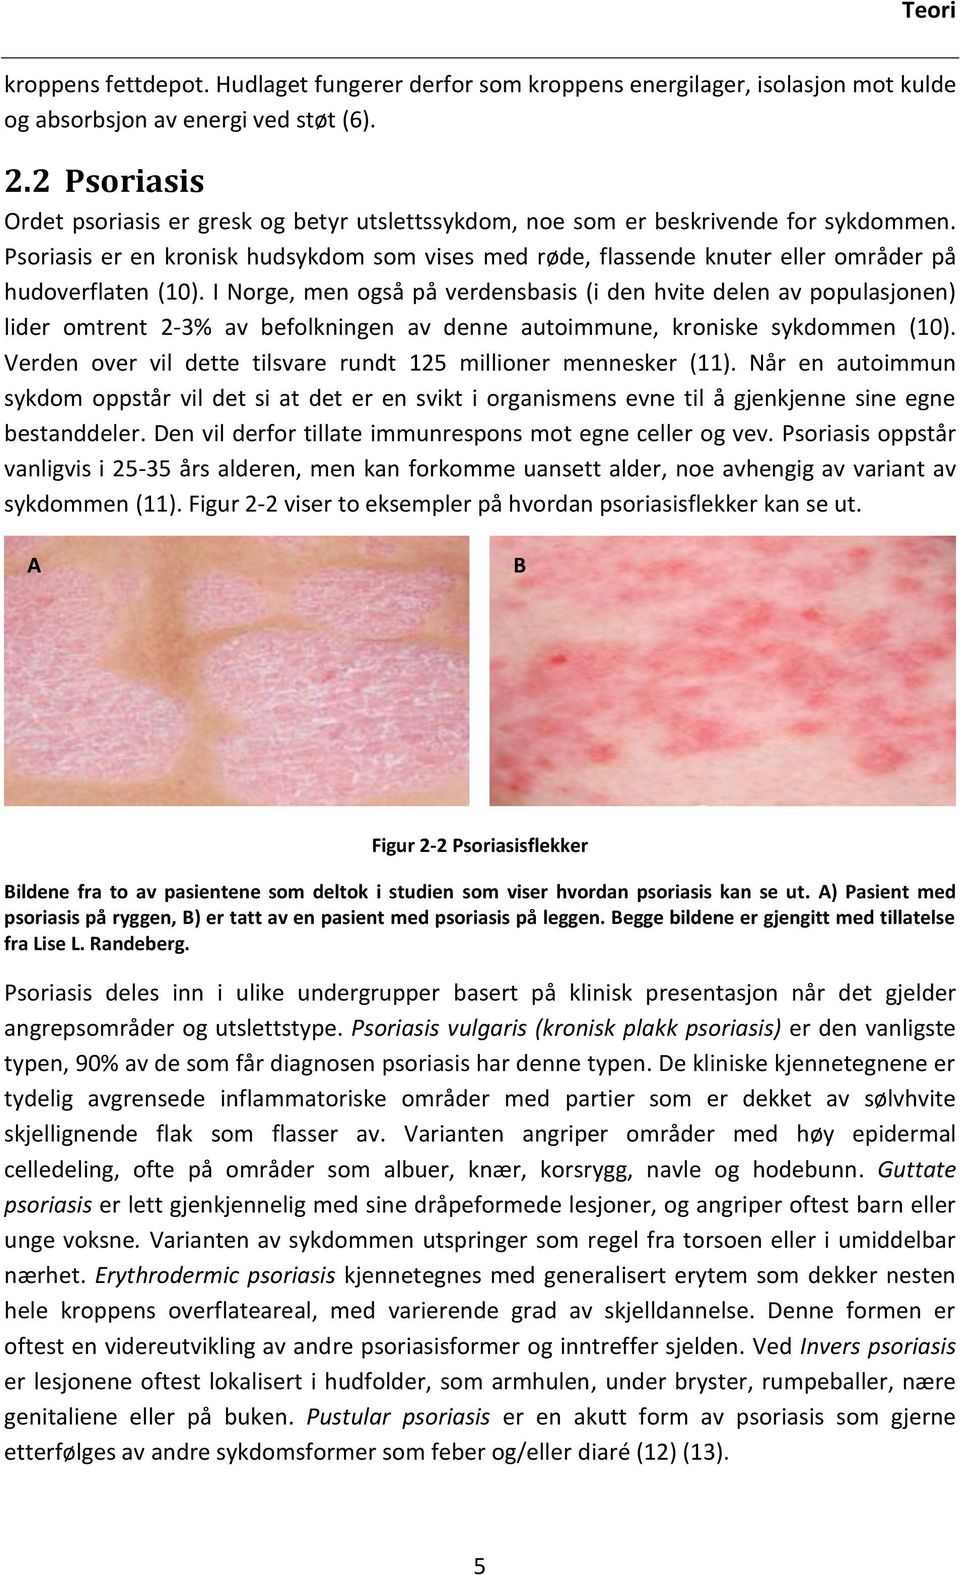 Psoriasis er en kronisk hudsykdom som vises med røde, flassende knuter eller områder på hudoverflaten (10).